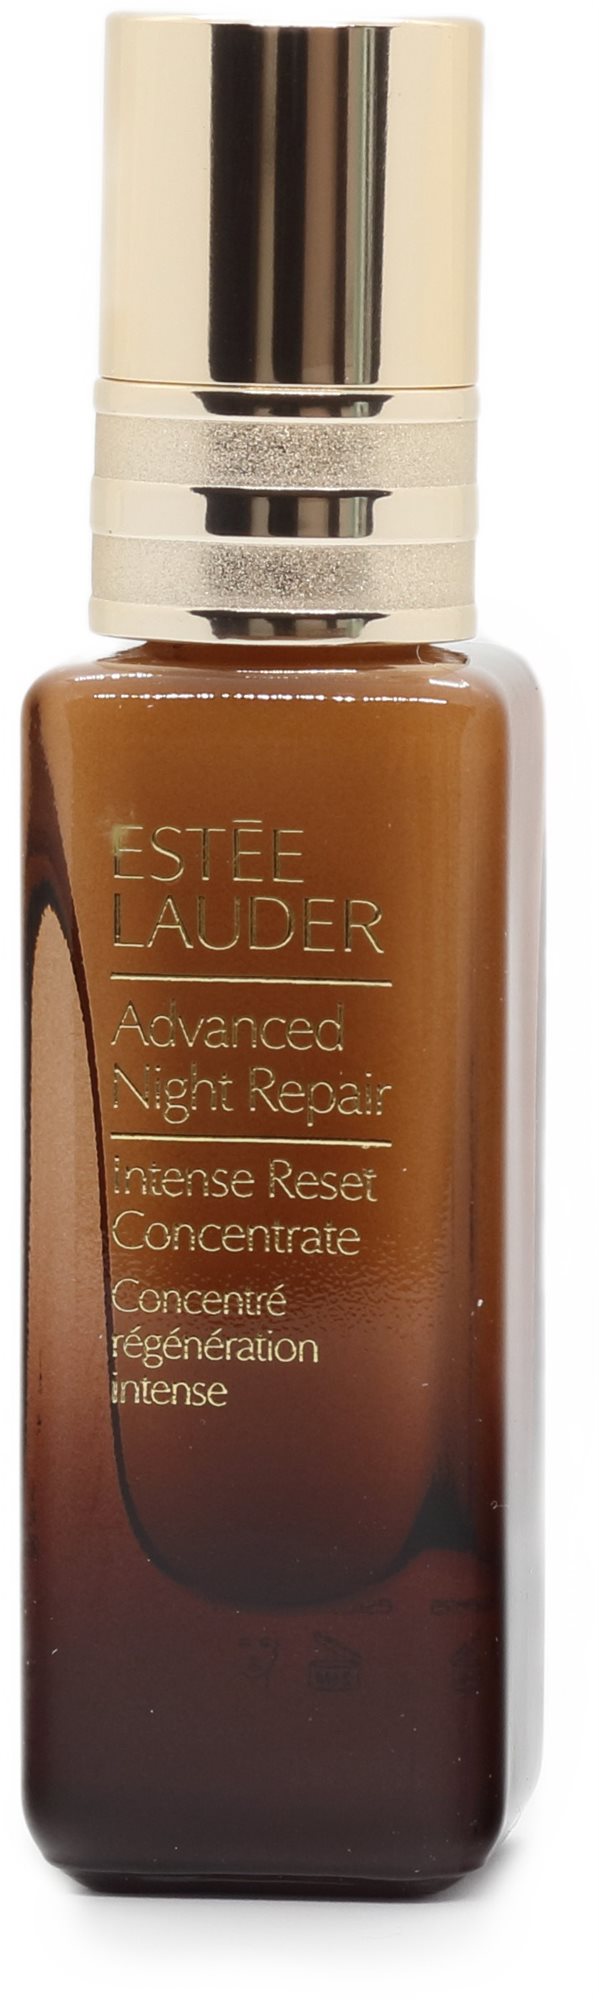 ESTEE LAUDER Advanced Night Repair Intense Reset Concentrate 20 ml